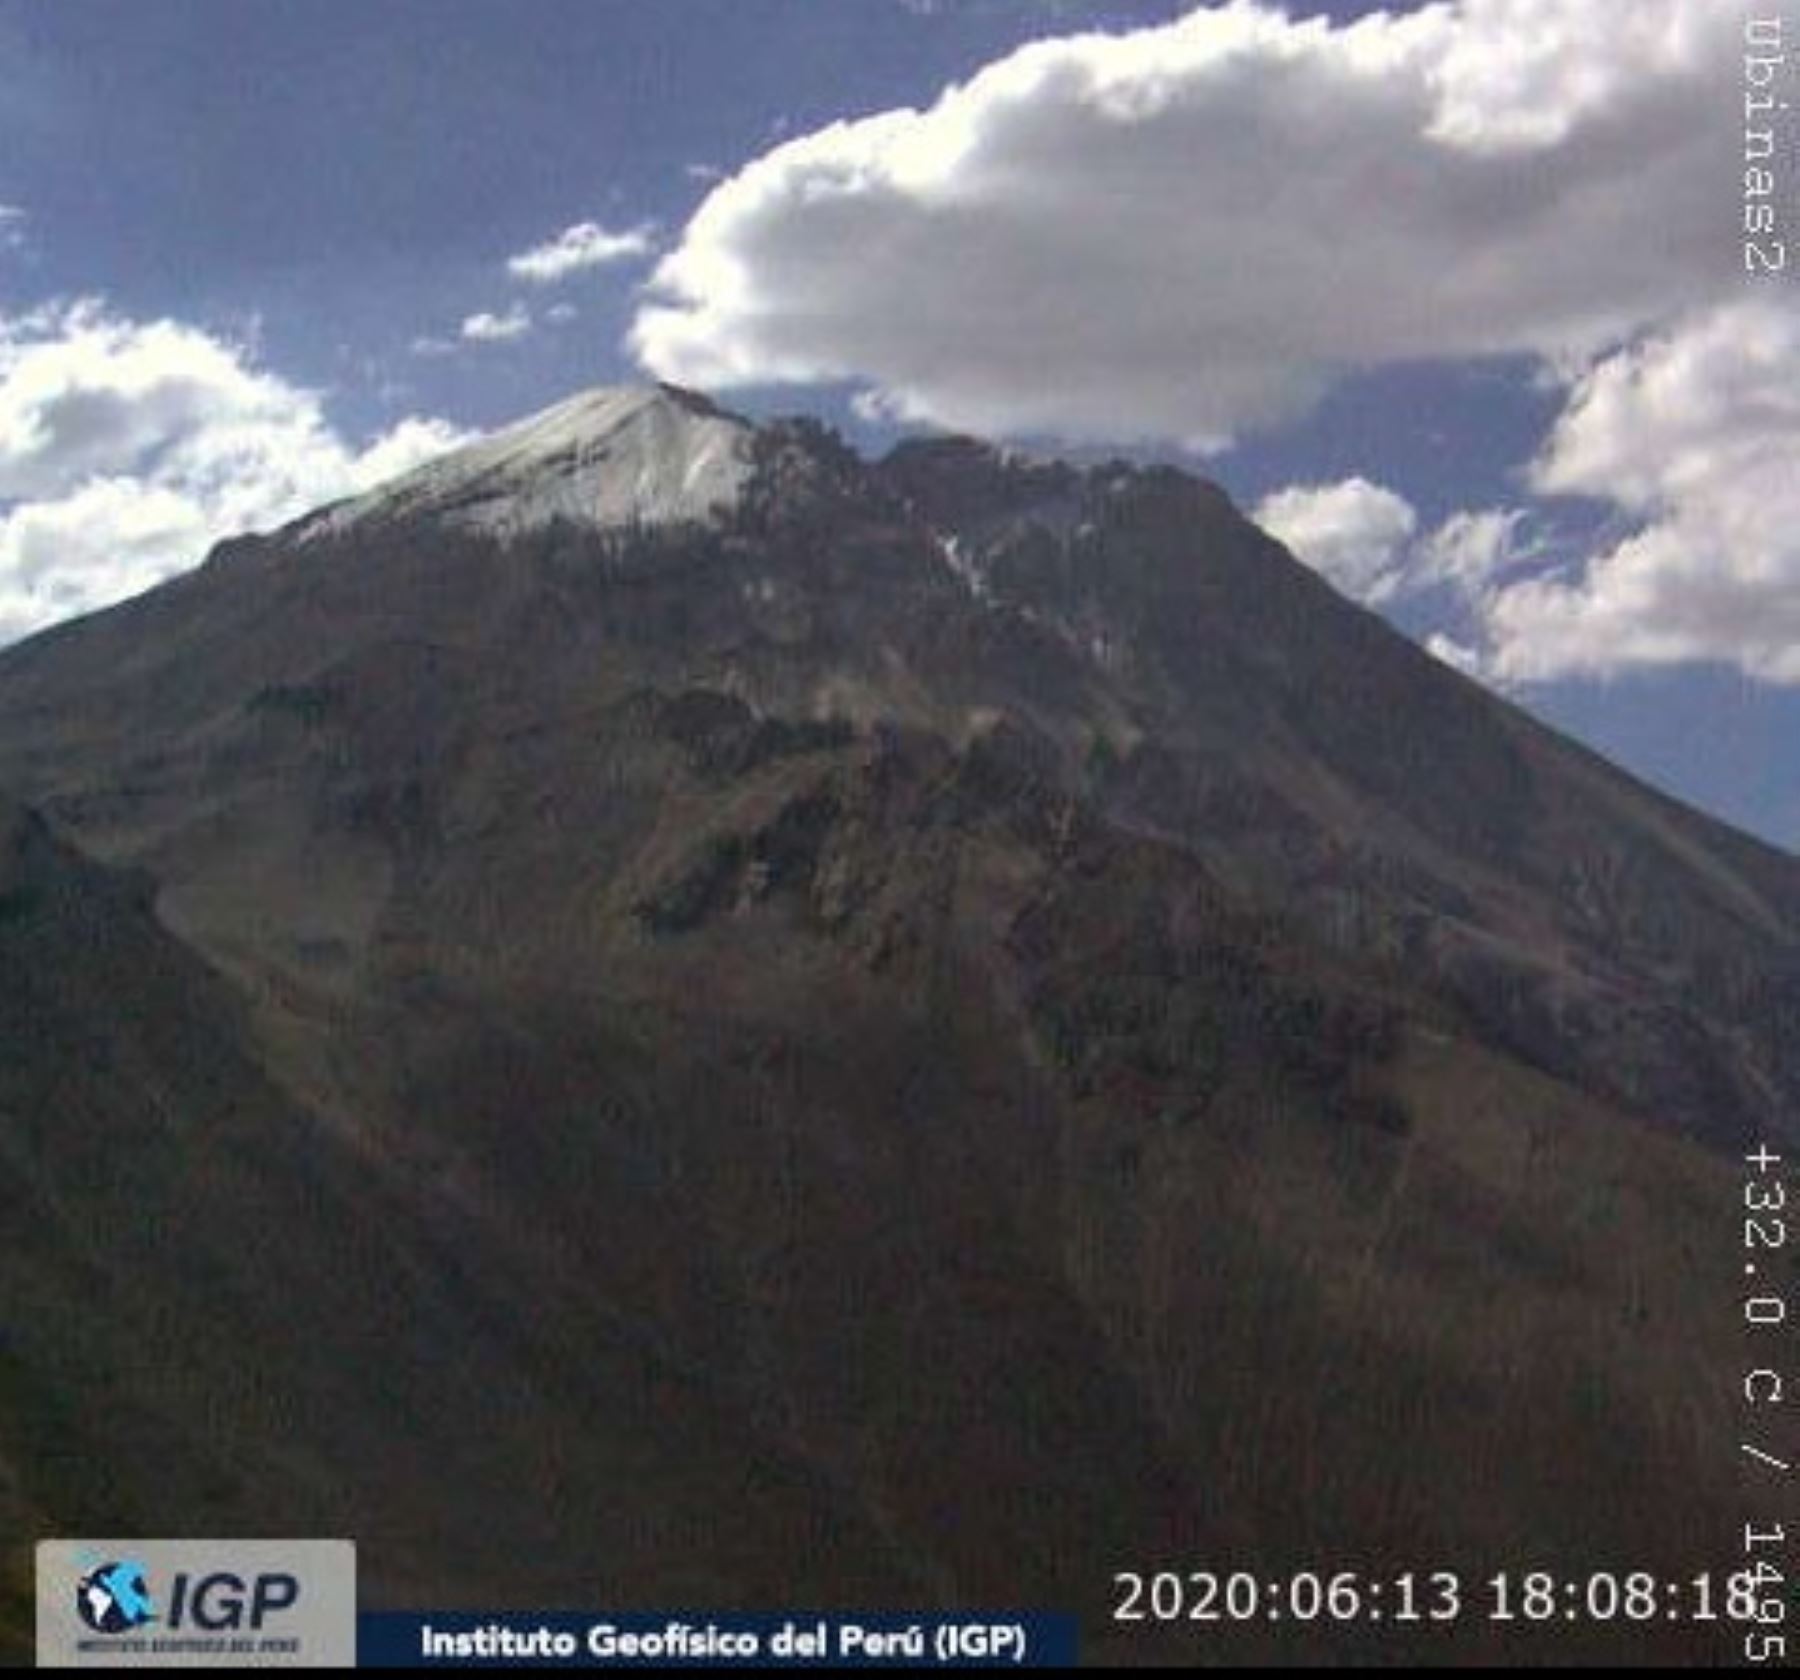 El Instituto Geofísico del Perú (IGP), a través del Centro Vulcanológico Nacional (Cenvul), informó hoy el registro de actividad sísmica leve en la zona del volcán Ubinas entre los días 8 al 13 de junio de 2020.